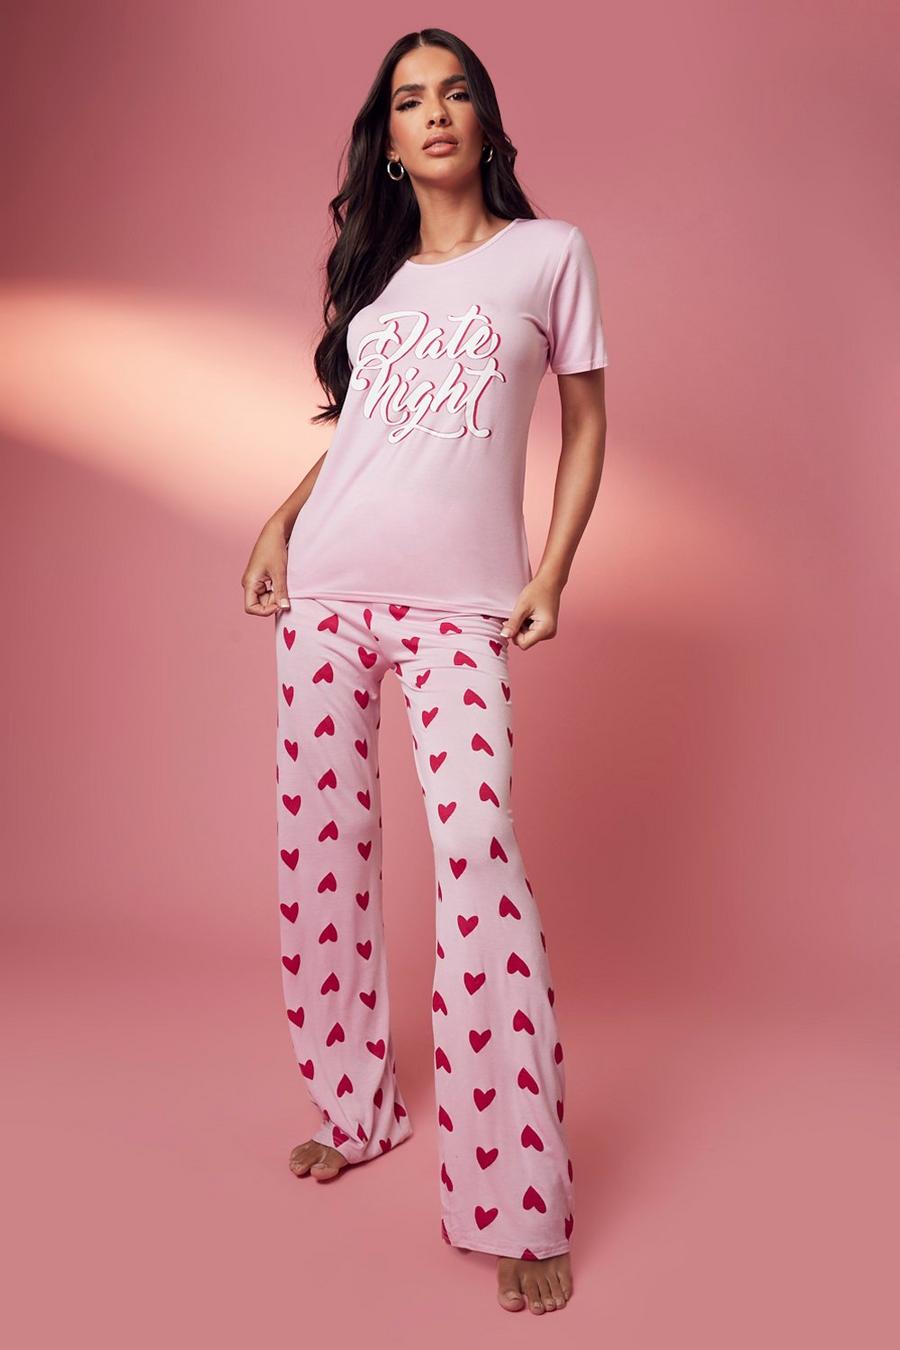 Set pigiama di S. Valentino con pantaloni lunghi a cuori e scritta Date Night, Baby pink rosa